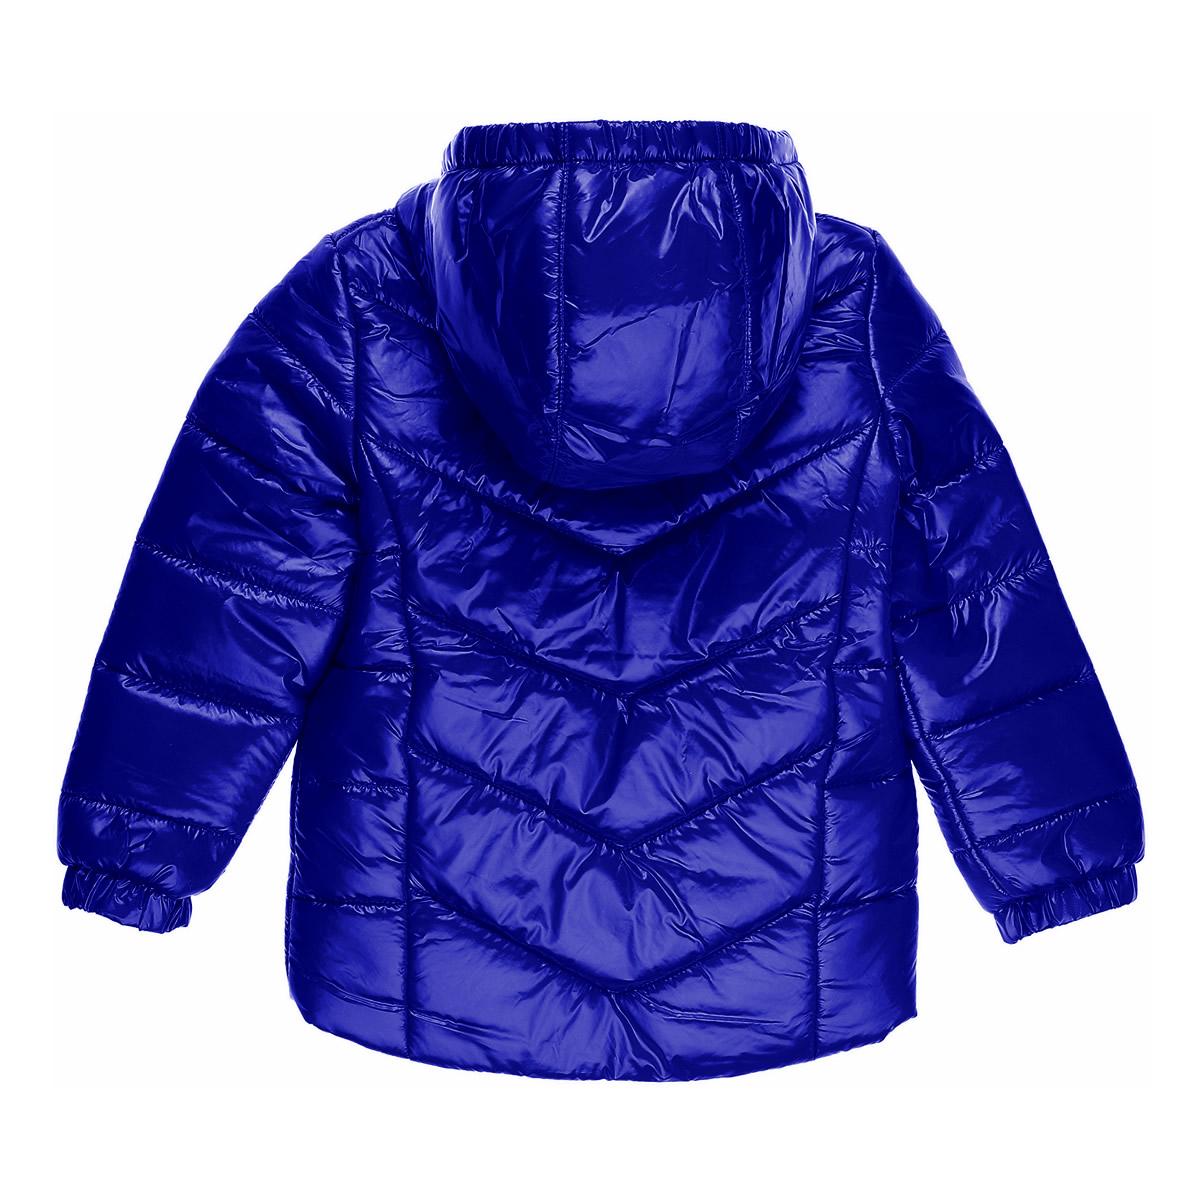 Дитяча демісезонний куртка для дівчинки, індиго (27-ВД-20), Evolution 122р.